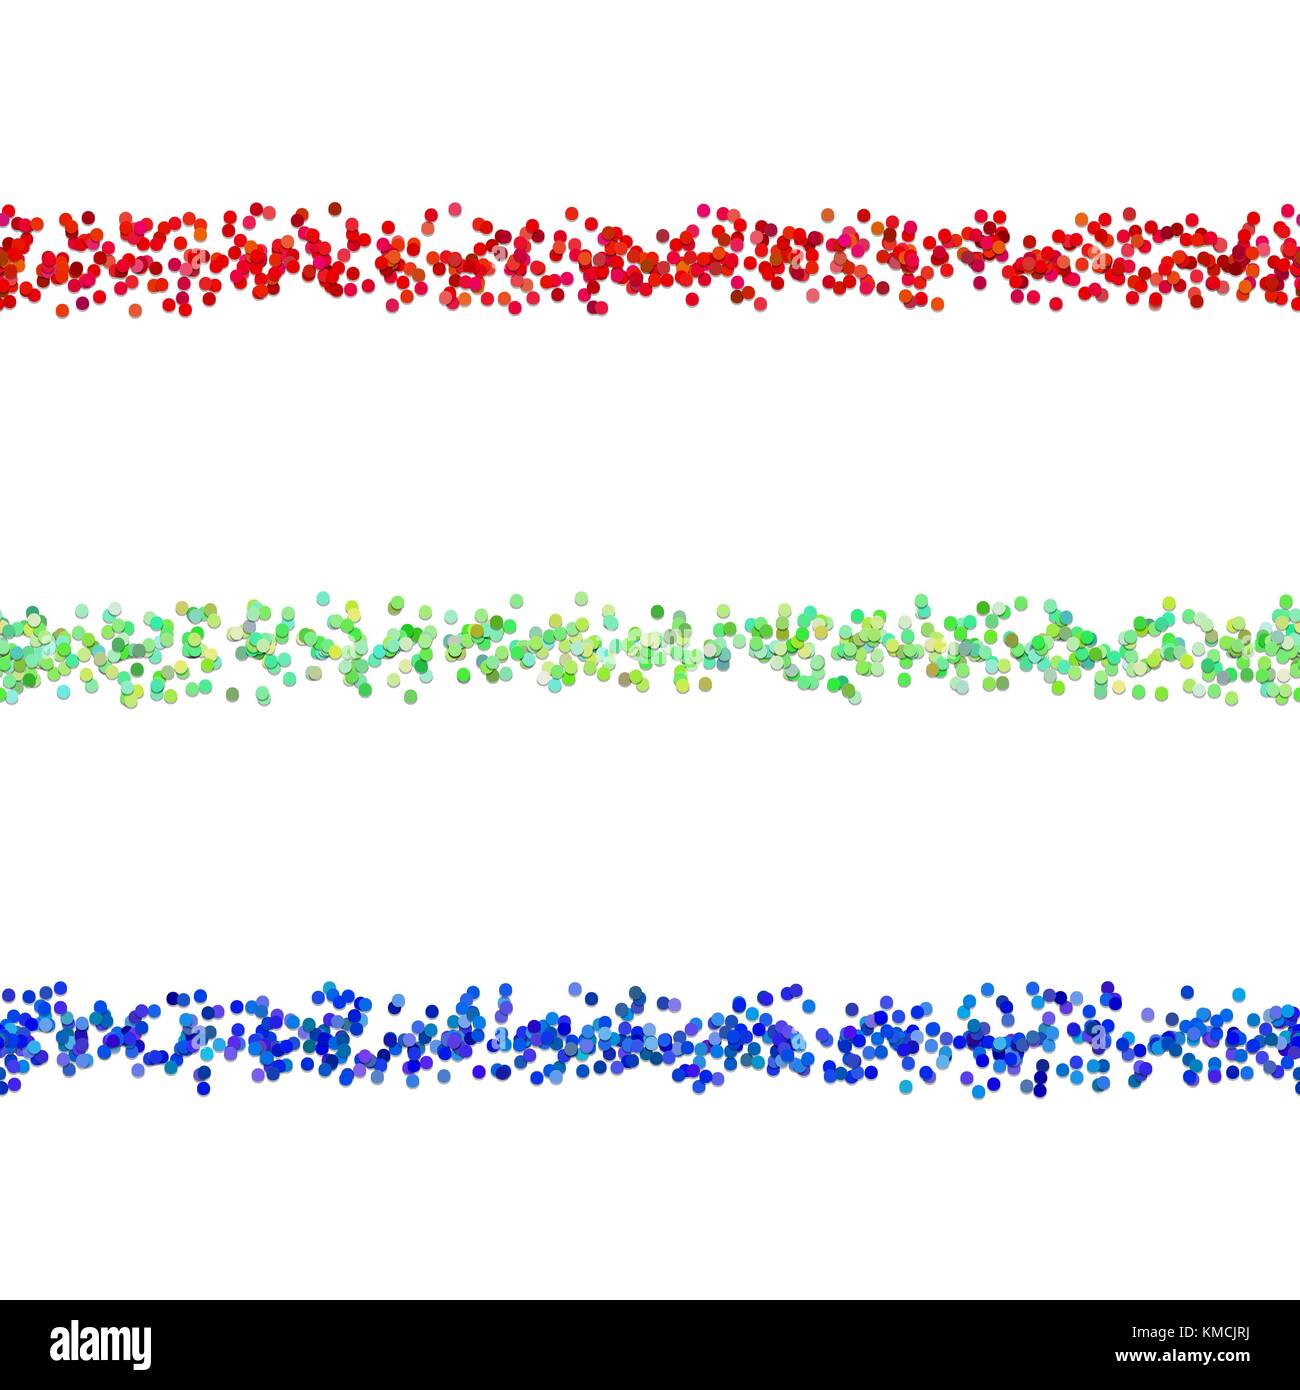 Wiederholbare dot pattern Absatz Trennlinie design Set - Vektor Elemente aus farbigen Kreise mit schatteneffekt Stock Vektor